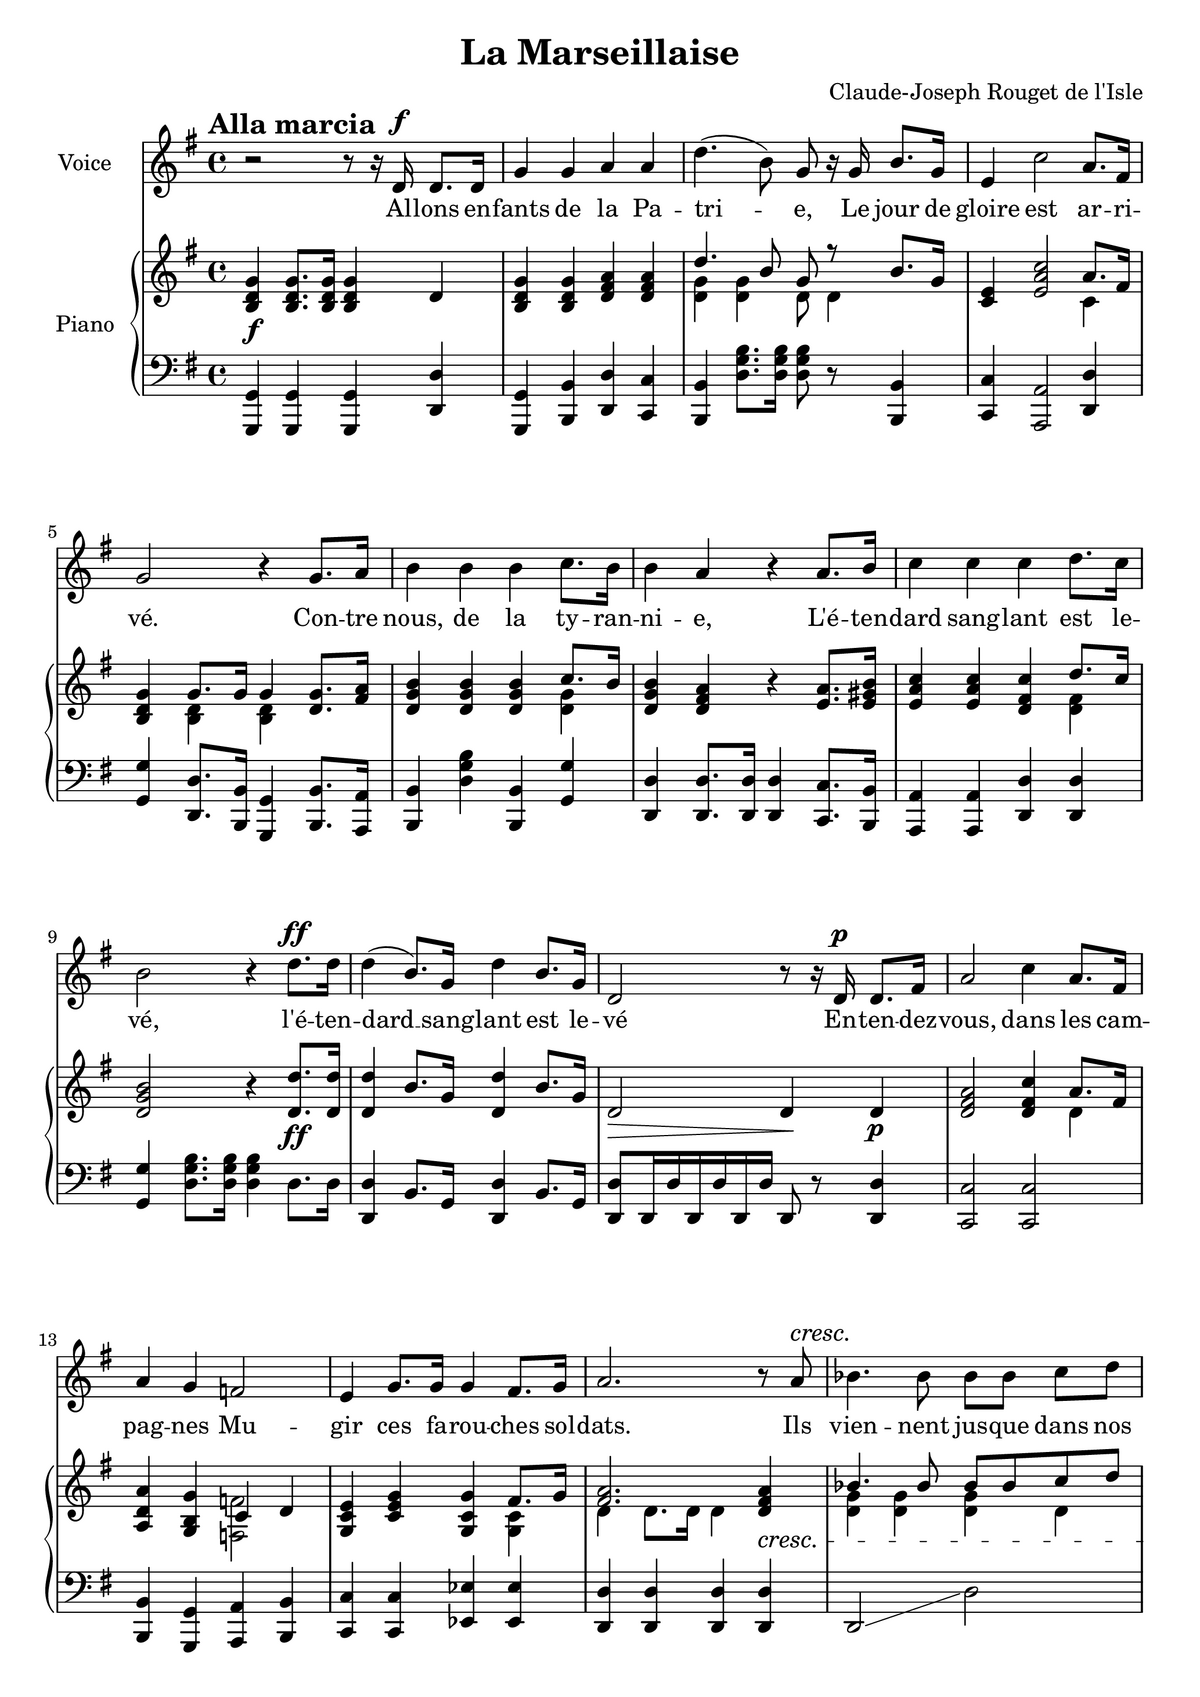 Battōtai (song) - Wikipedia